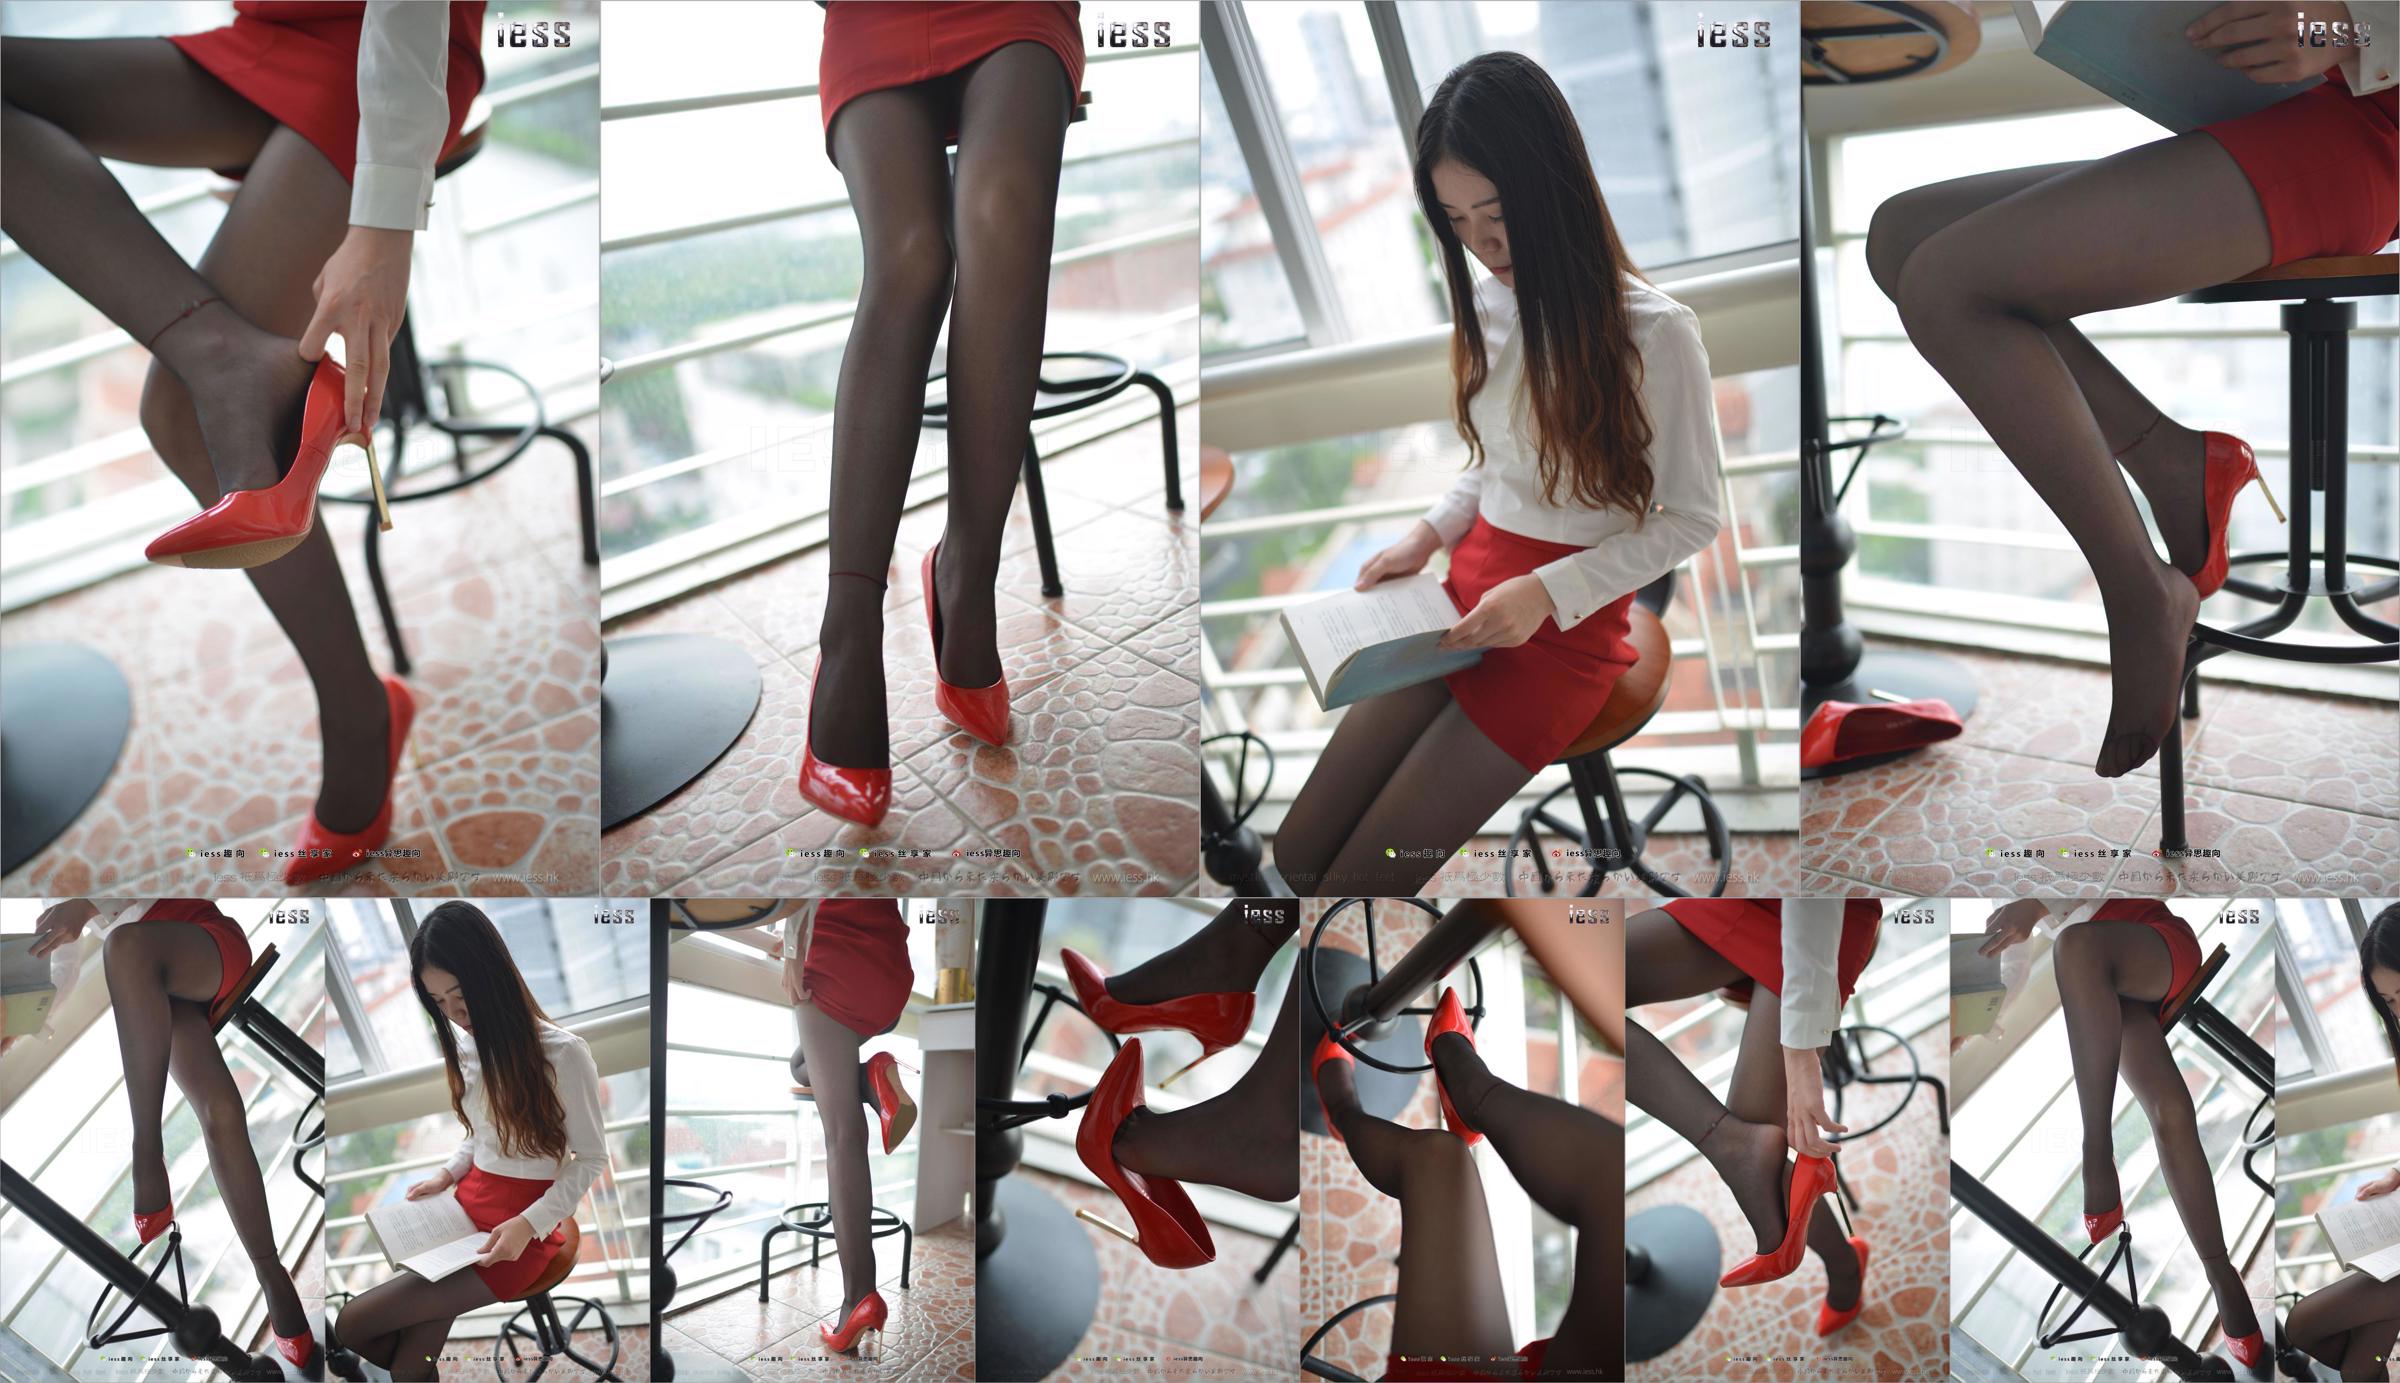 Silk Foot Bento 147 Concubine "Red High, Black Silk and Red Dress" [IESS Estranho Interessante] No.2d825b Página 5